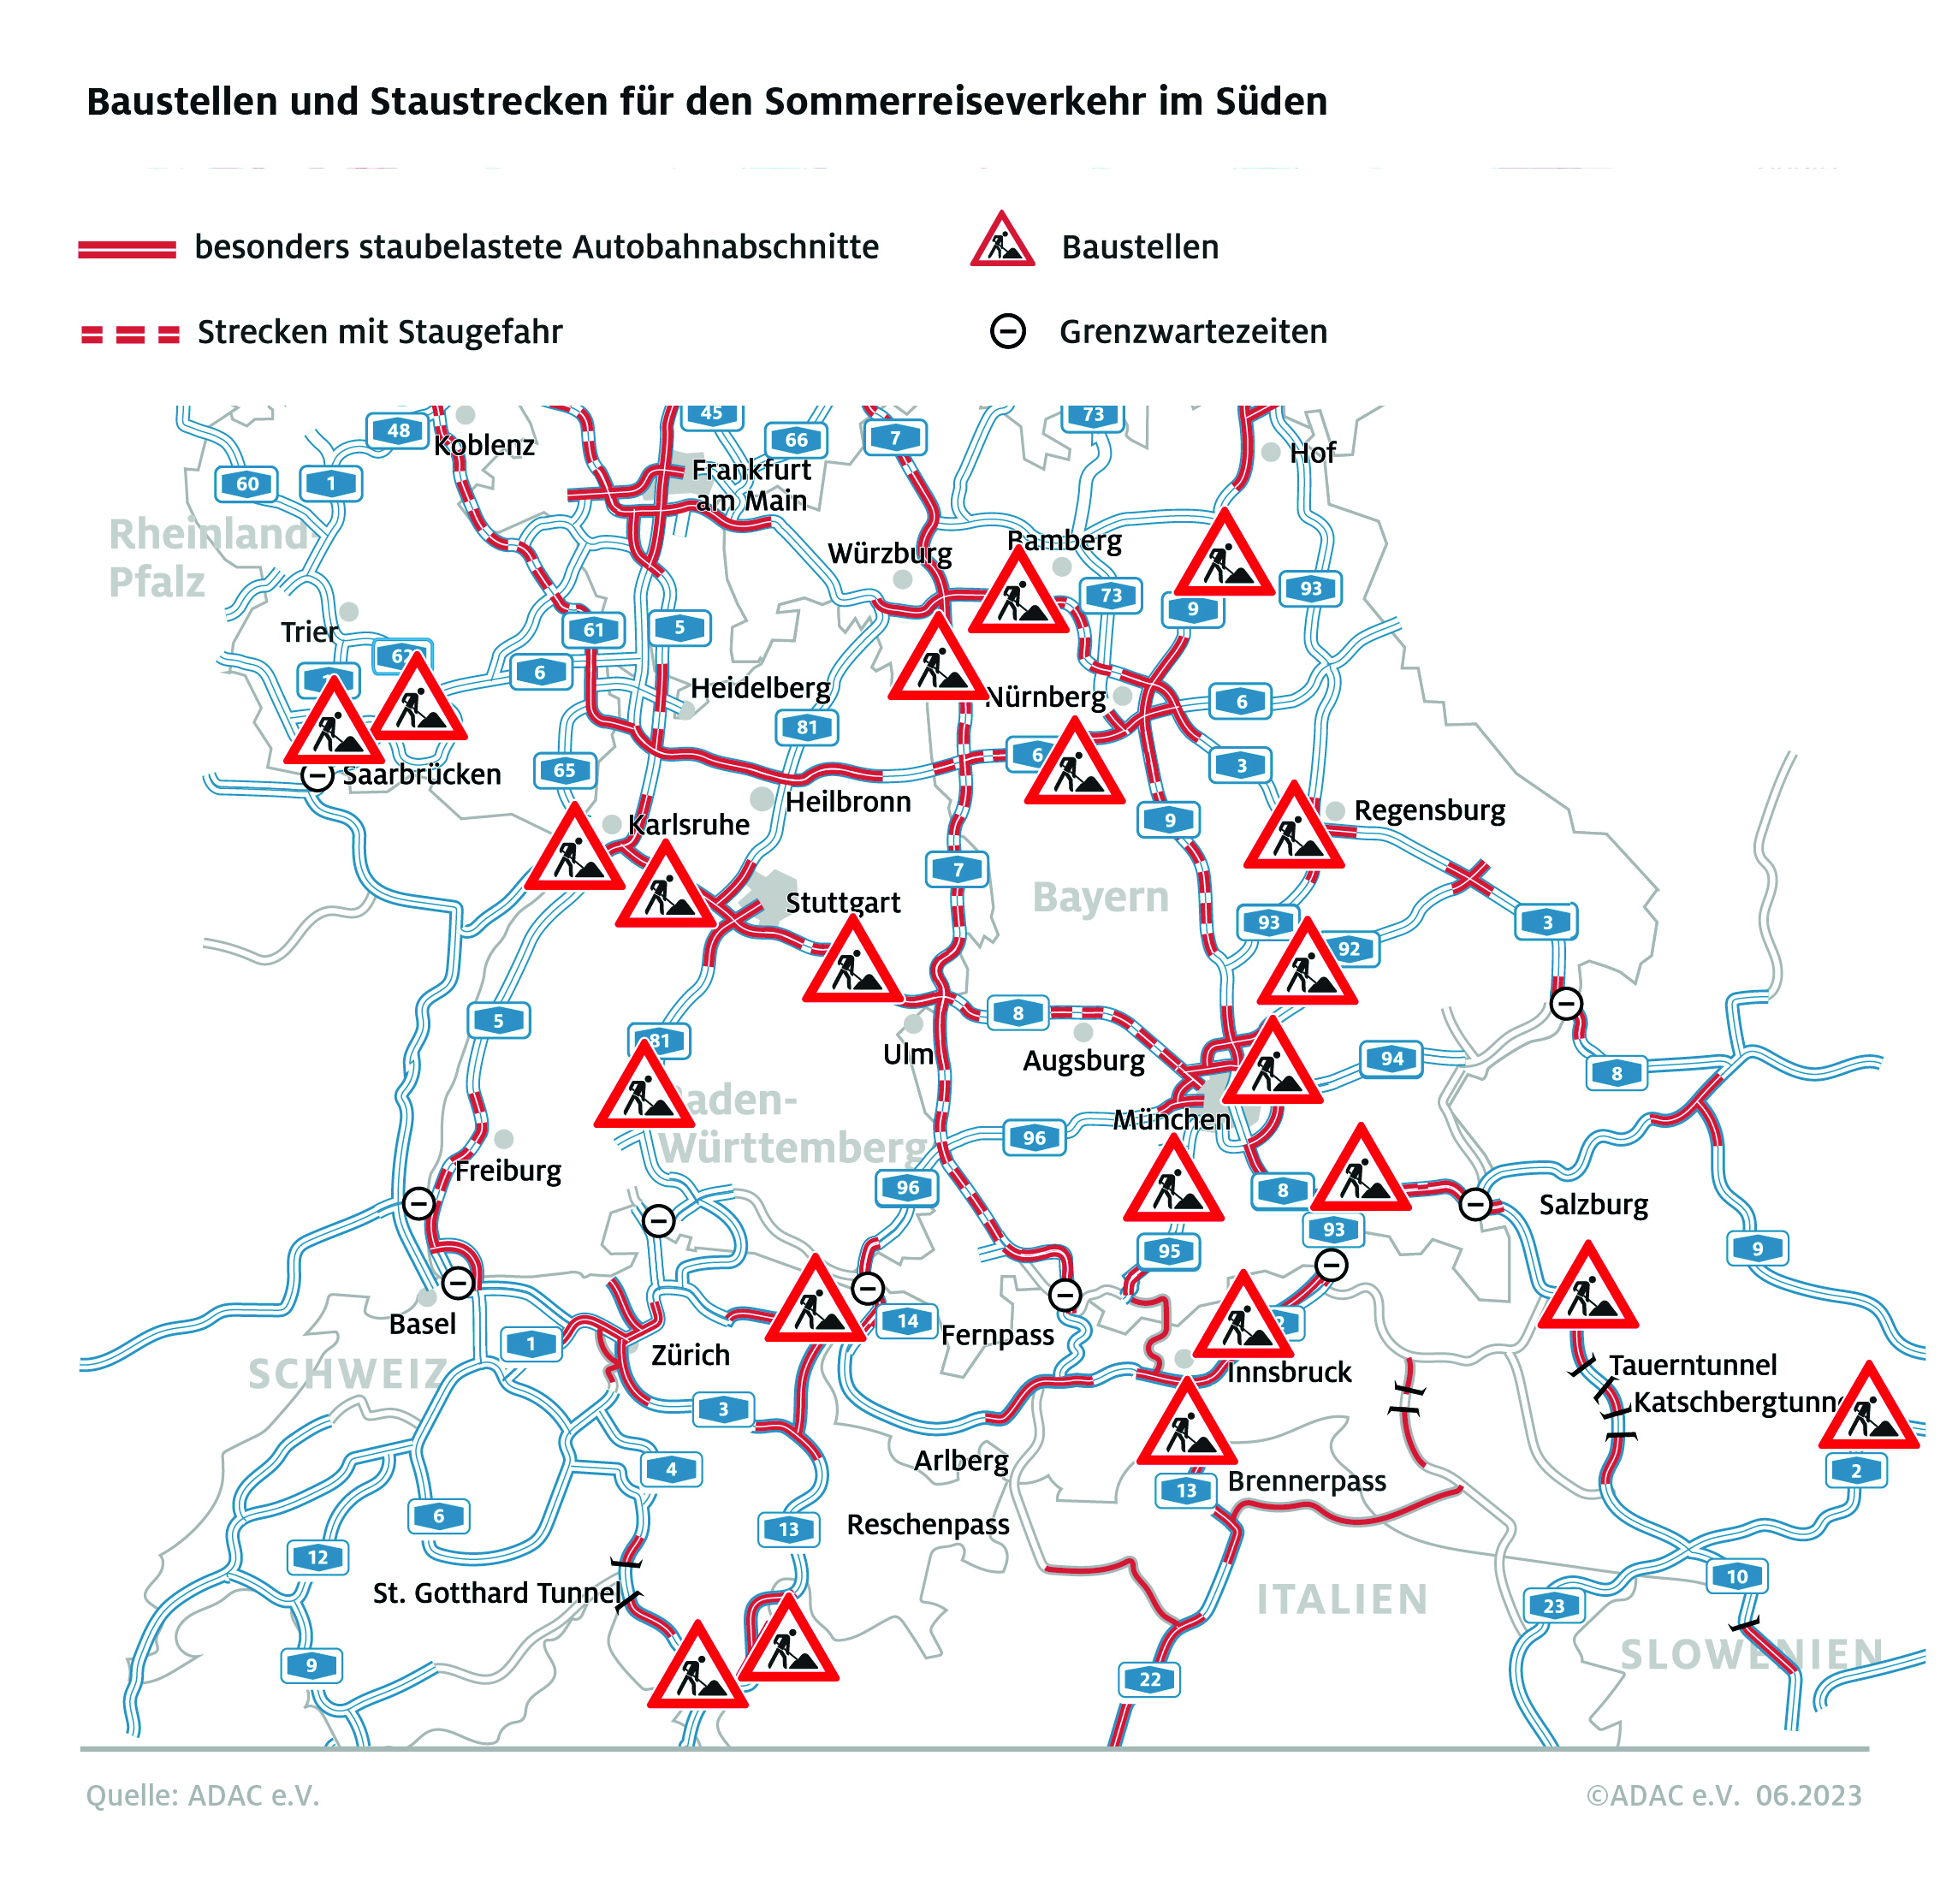 Zu Beginn der bayerischen Sommerferien rechnet der ADAC mit viel Verkehr und langen Staus: Die Reise in den Süden könnte zur Geduldsprobe werden. Foto: Copyright ADAC Infogramm